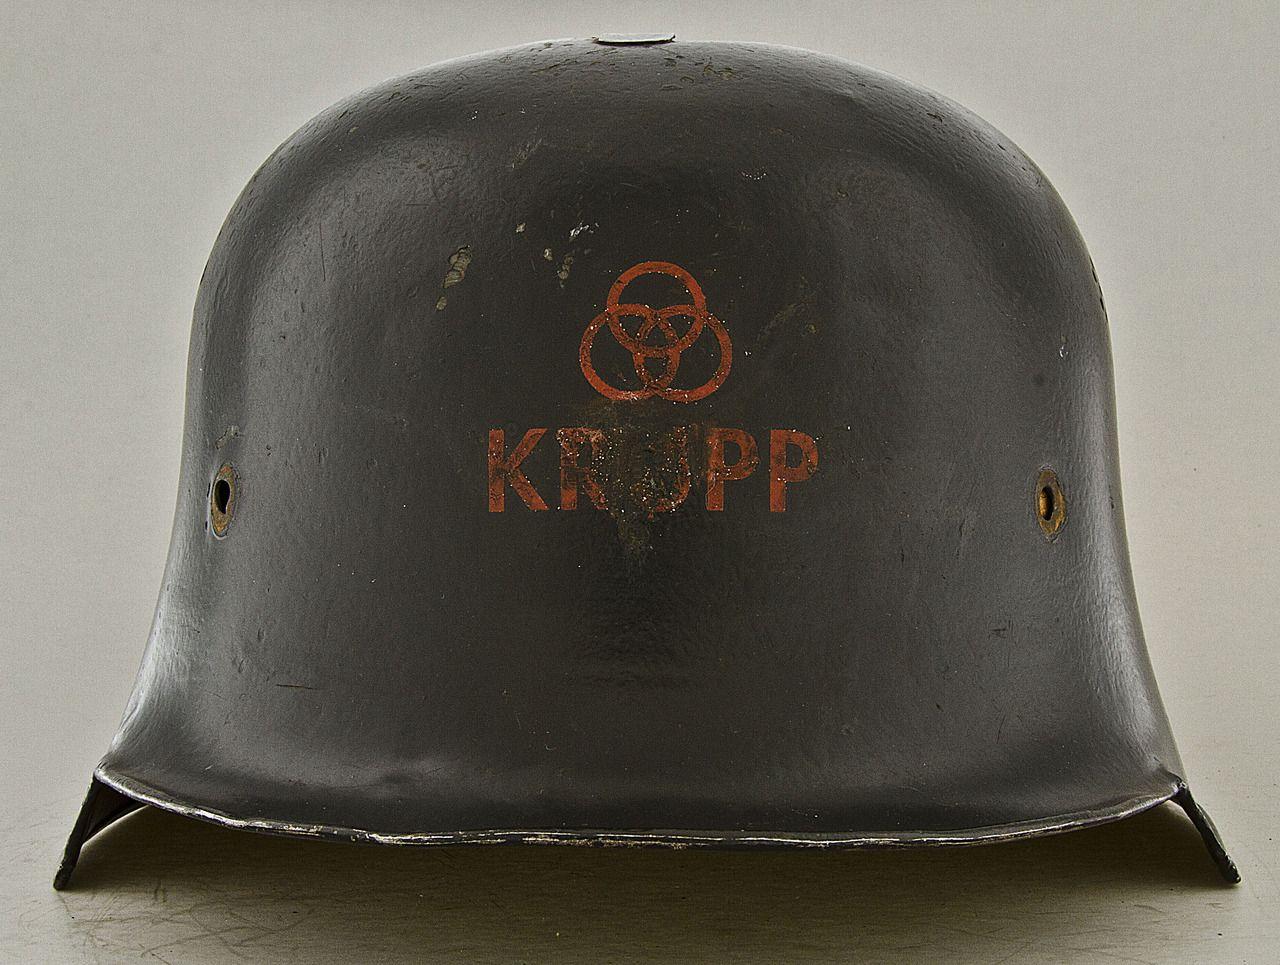 Krupp Logo - Krupp factory safety helmet, Germany 1930's [1280x965] : ArtefactPorn